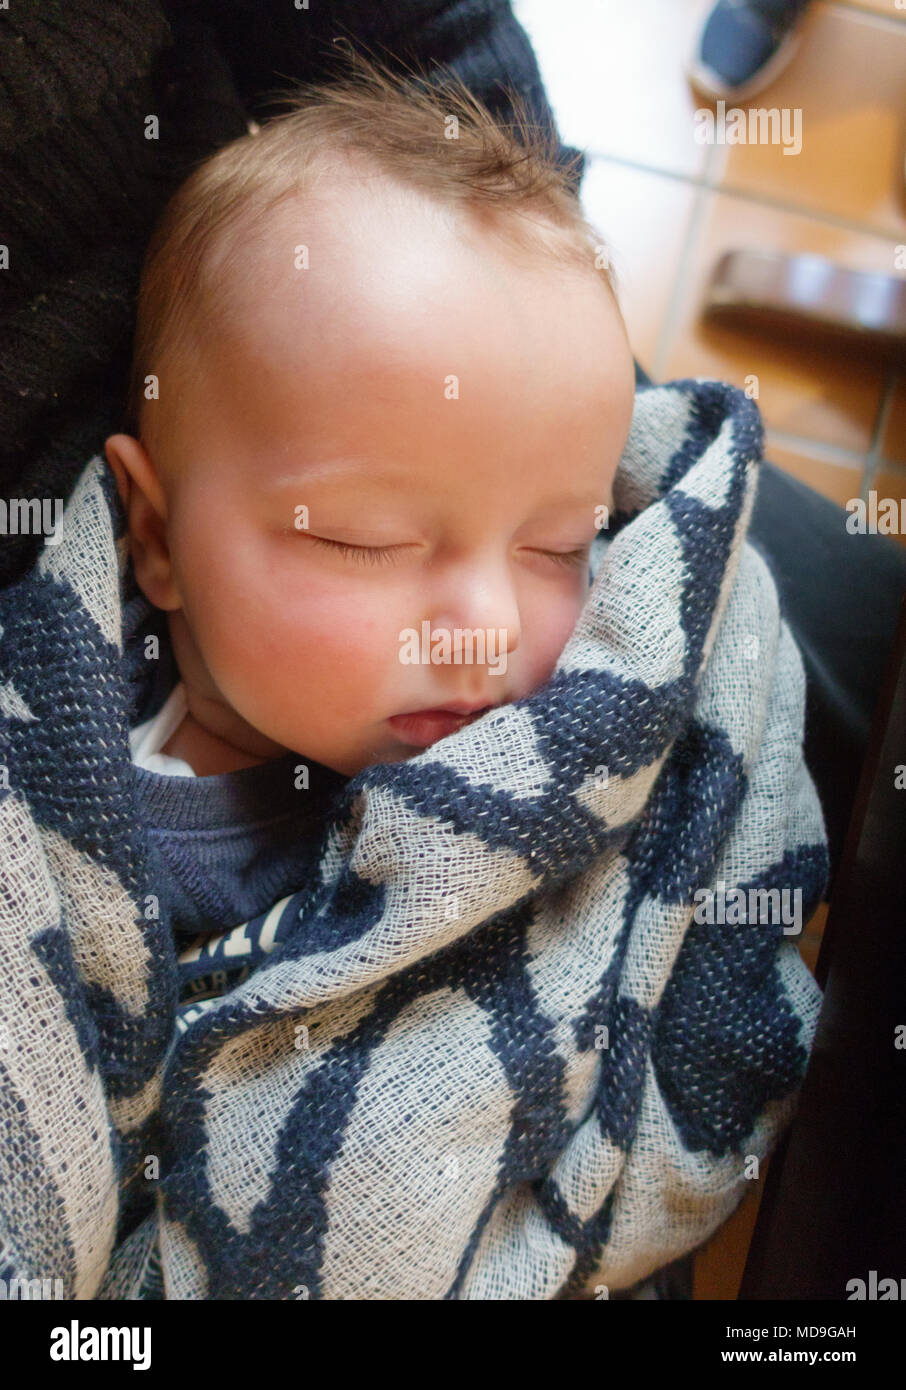 Dormir bébé nouveau-né enveloppé dans une couverture Banque D'Images